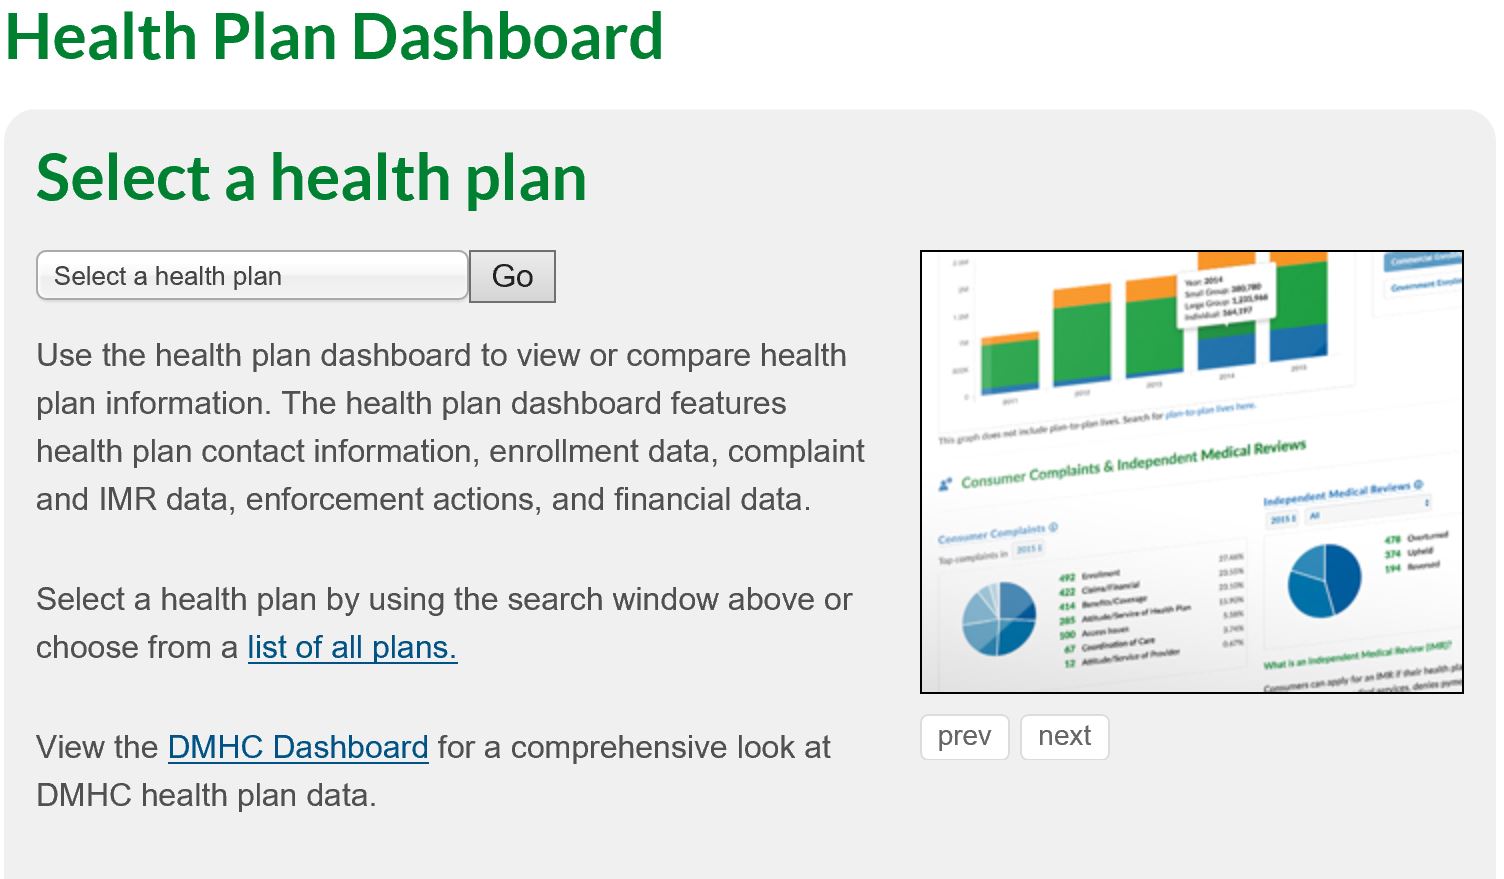 dmhc-health-plan-dashboard